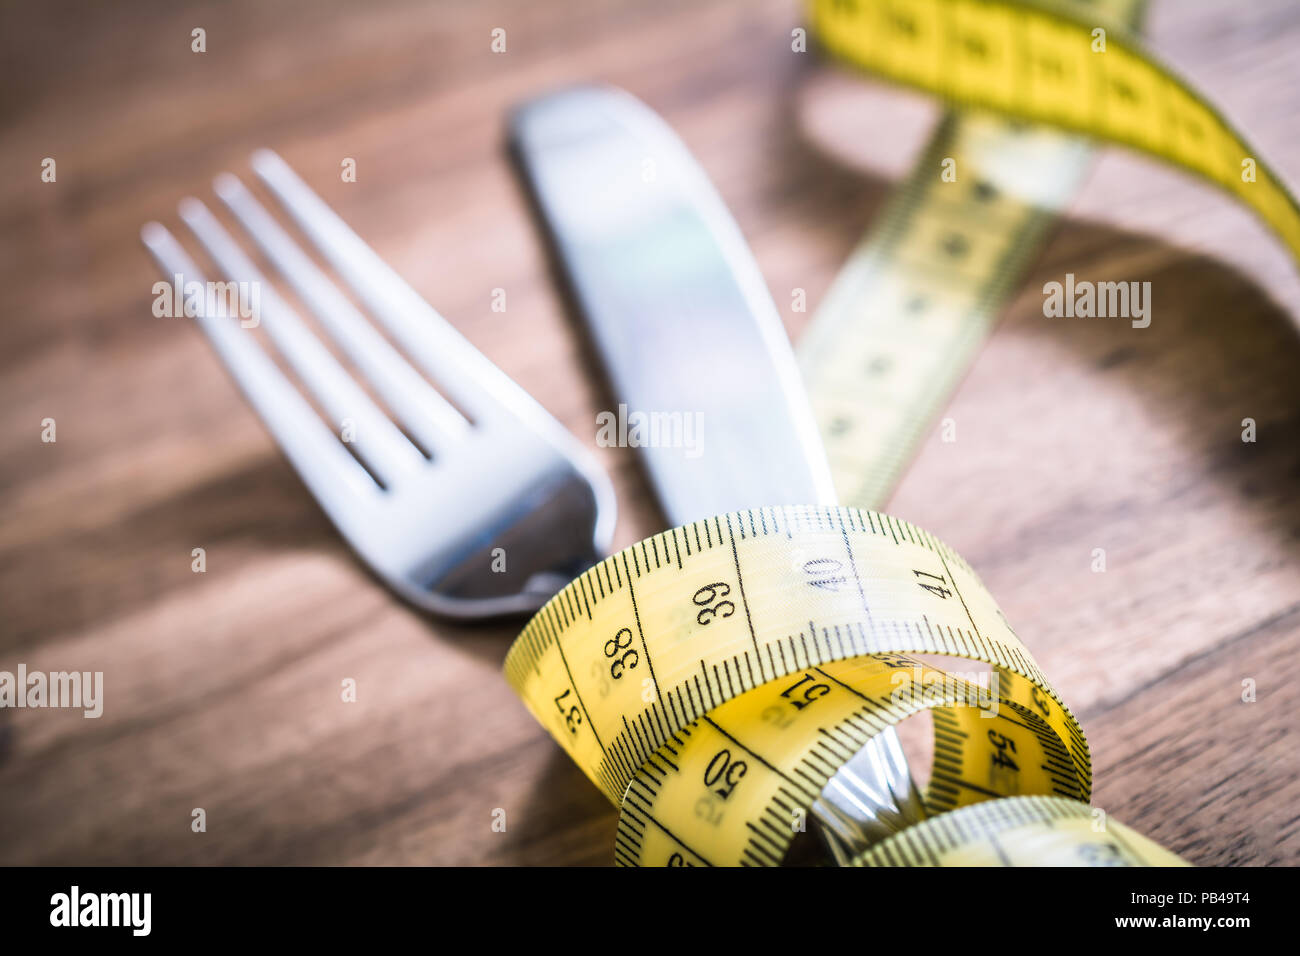 Fourchette et couteau macro de l'Argenterie attachées ensemble avec un ruban à mesurer sur une table - Perdre du poids Concept Banque D'Images